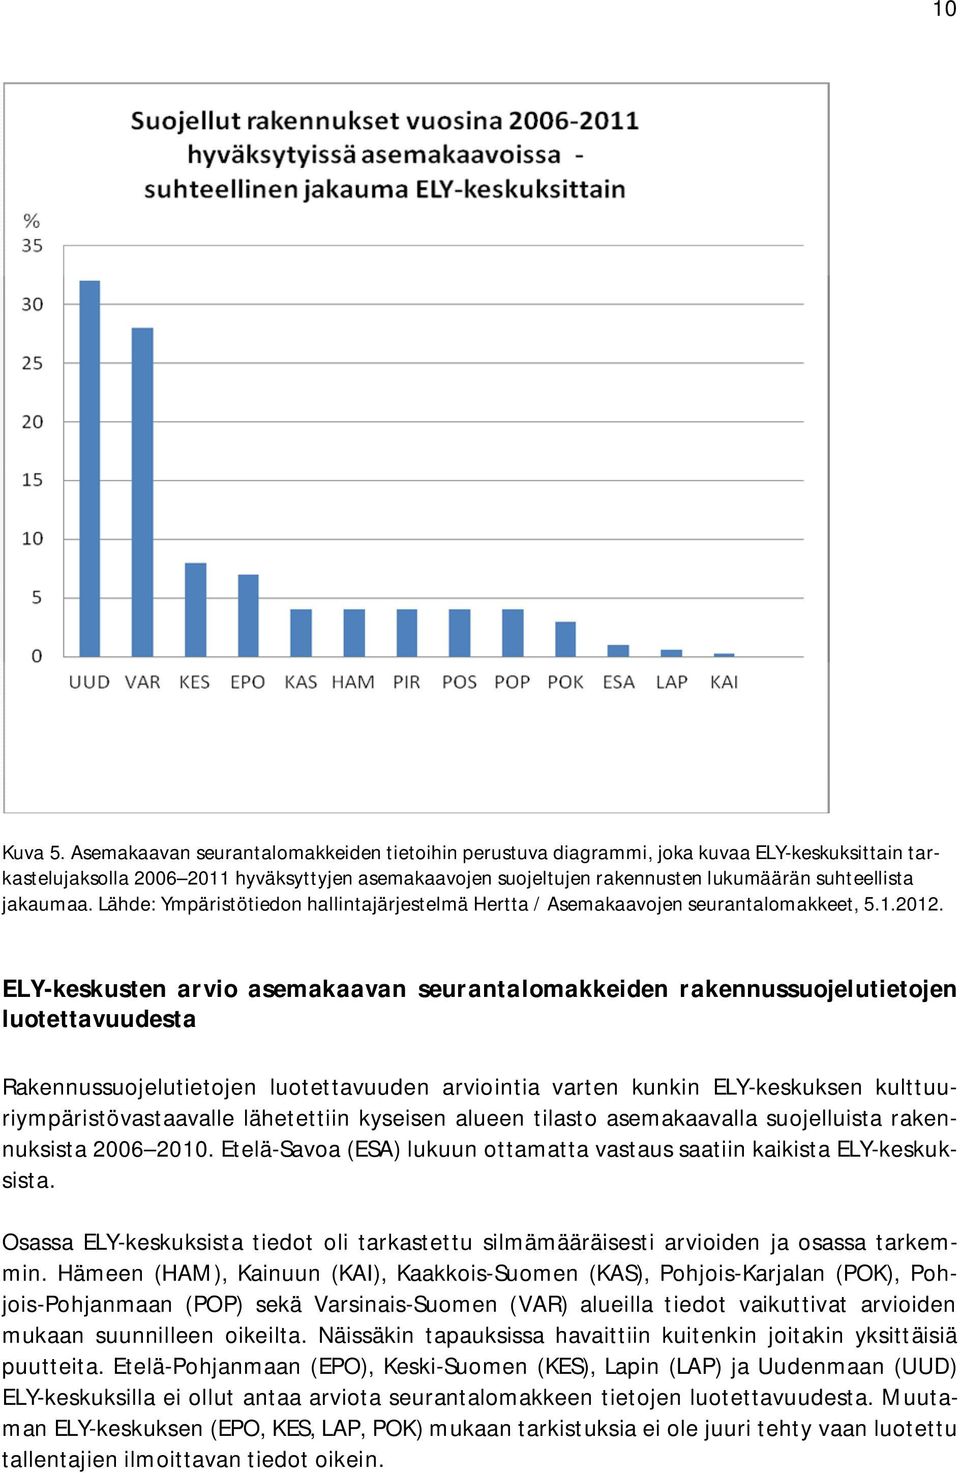 jakaumaa. Lähde: Ympäristötiedon hallintajärjestelmä Hertta / Asemakaavojen seurantalomakkeet, 5.1.2012.